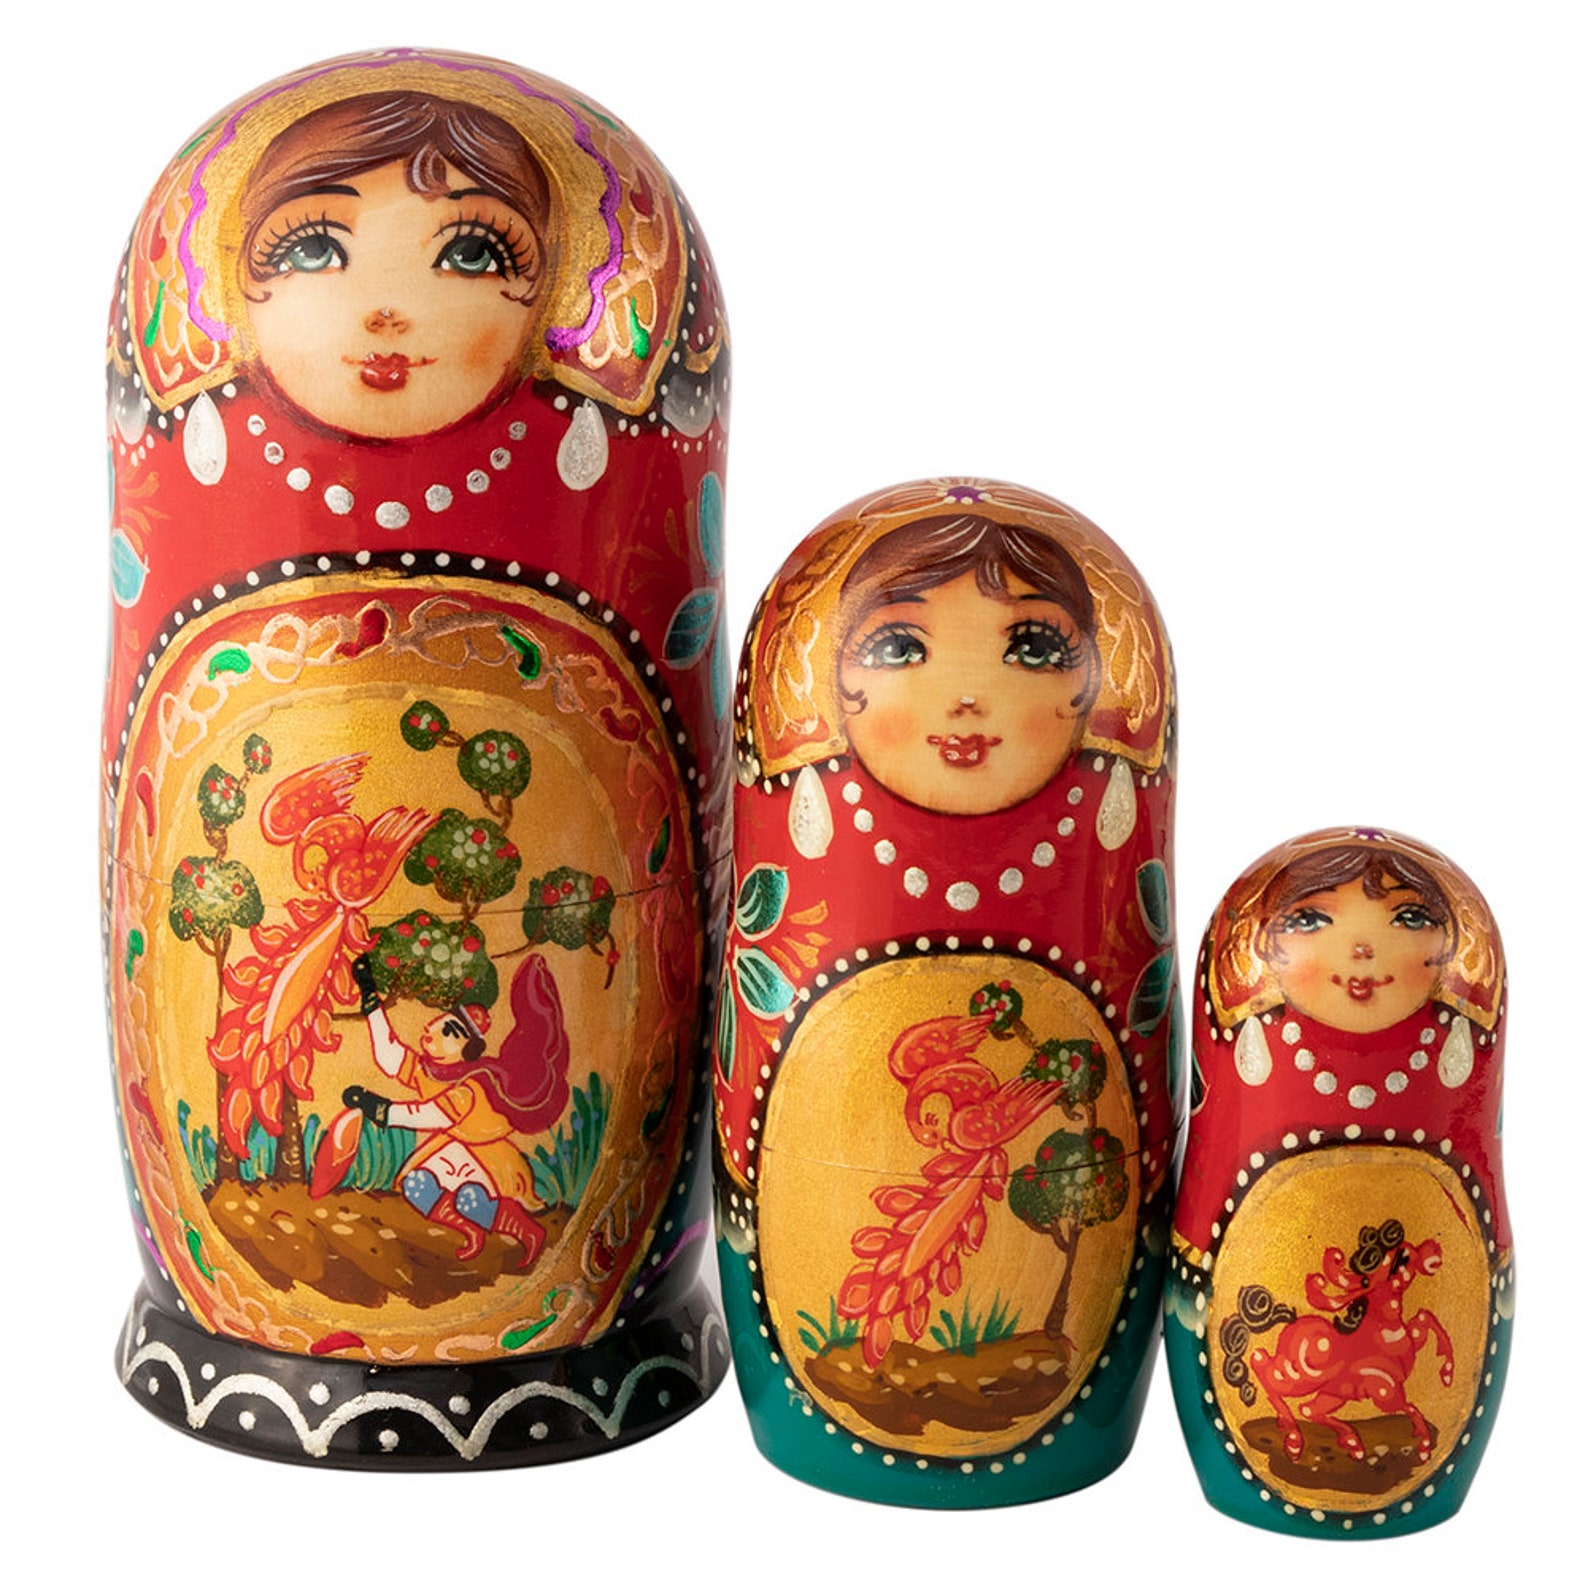 Babushka Doll Russian Doll Russian Matryoshka Handmade Etsy